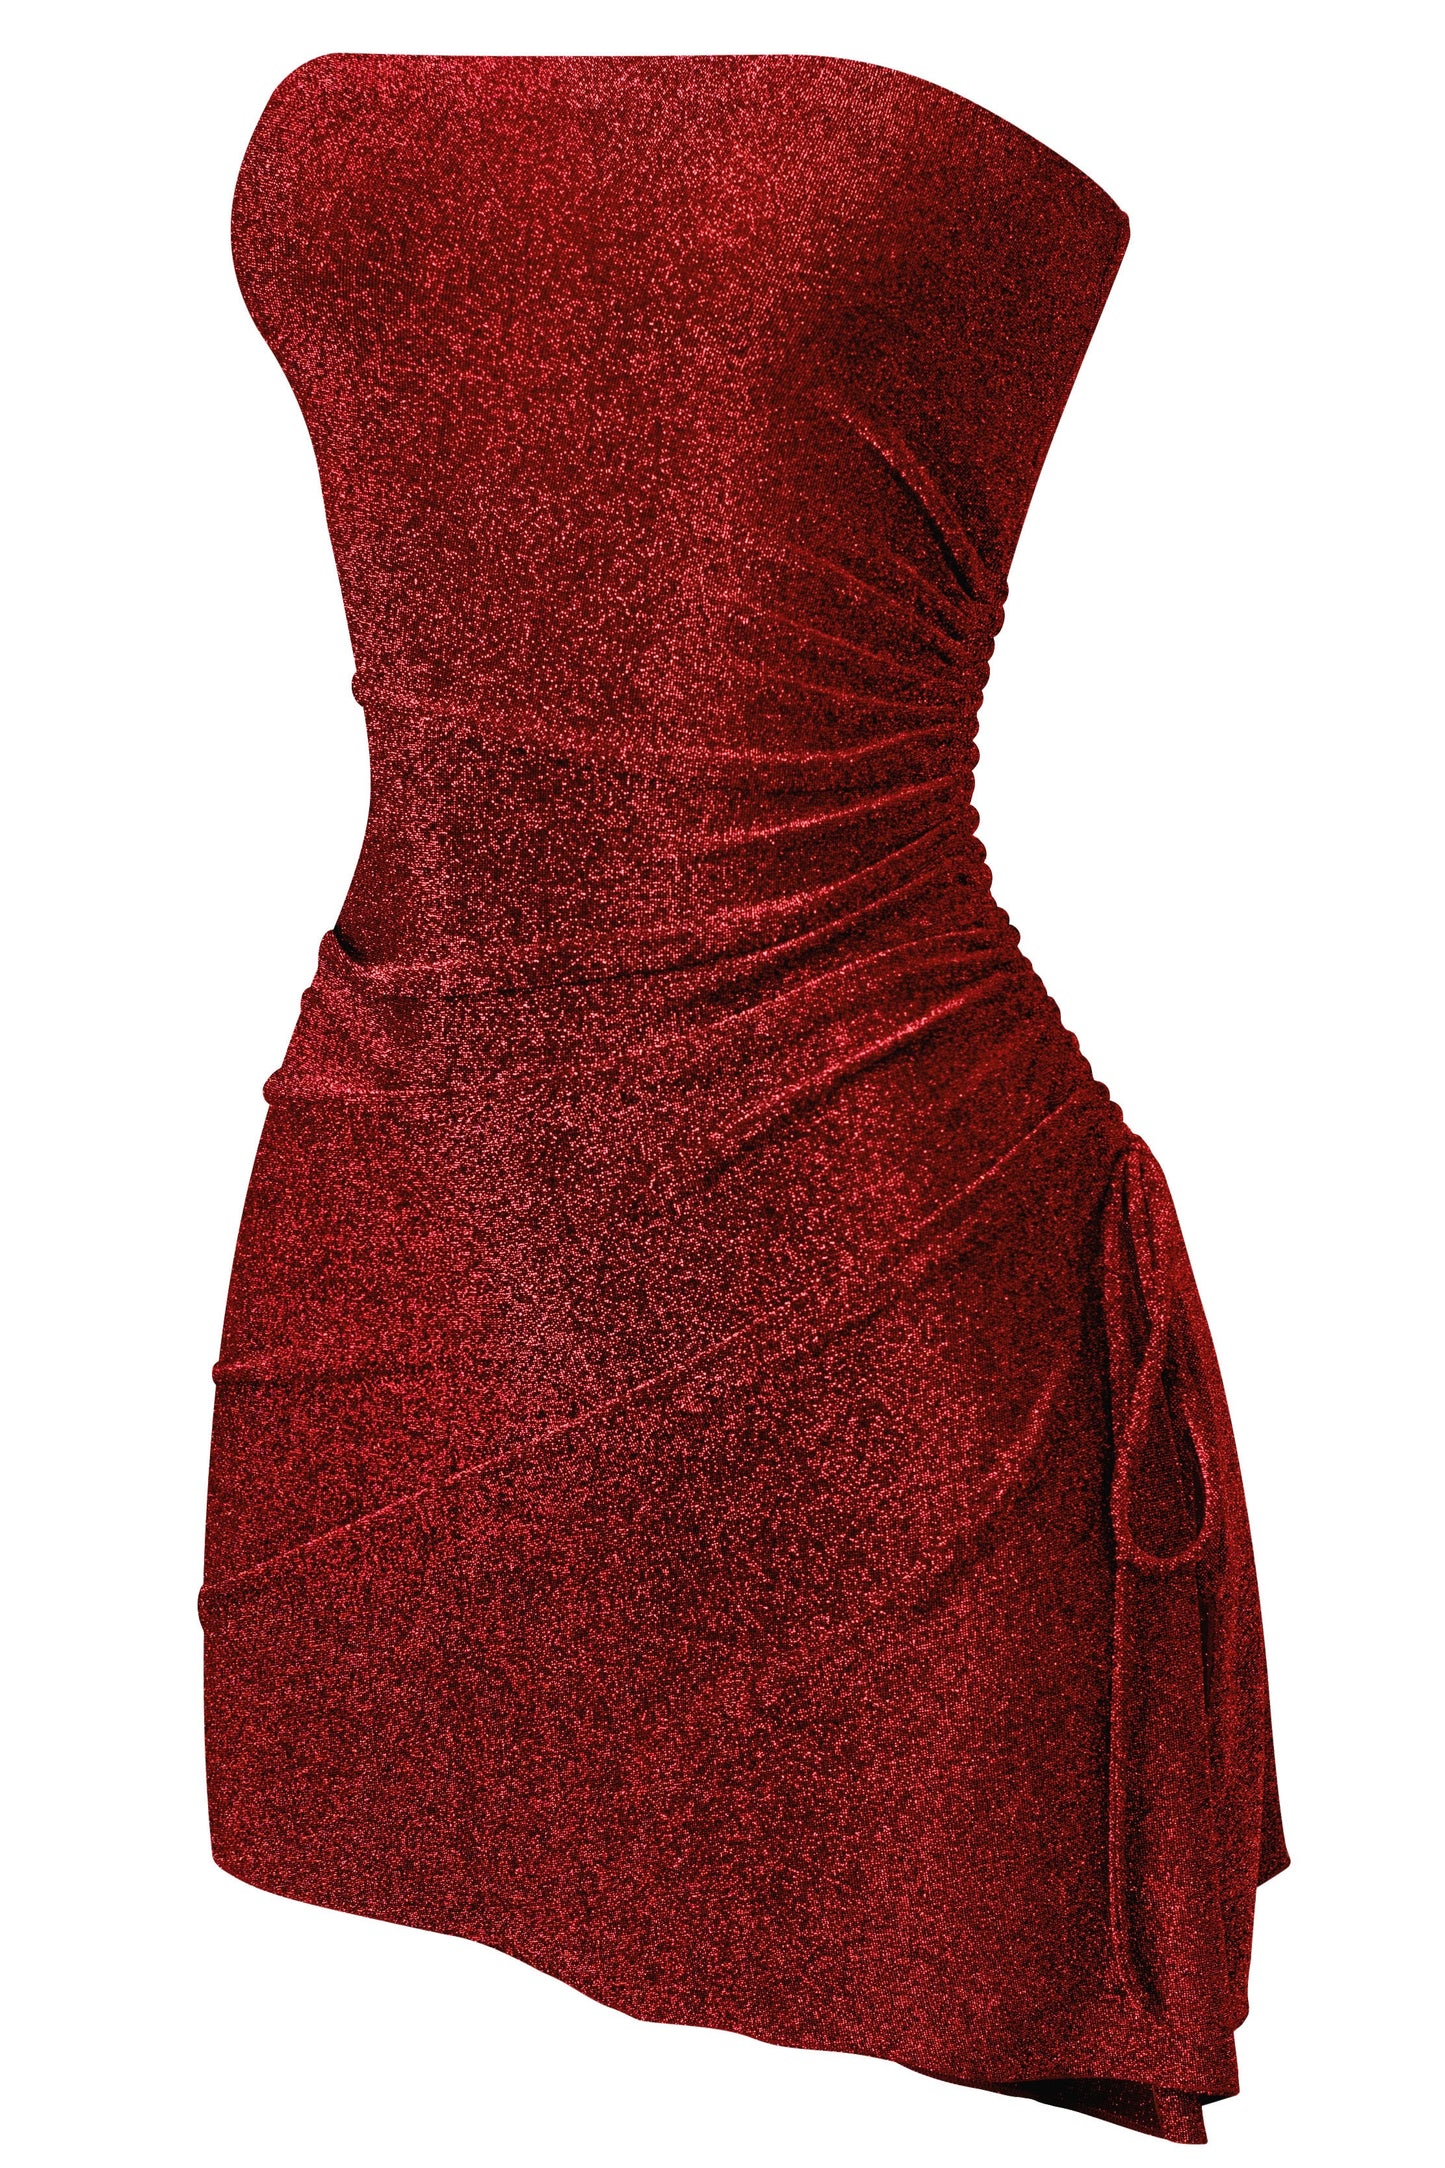 Samantha shimmer side slit dress - Red/black